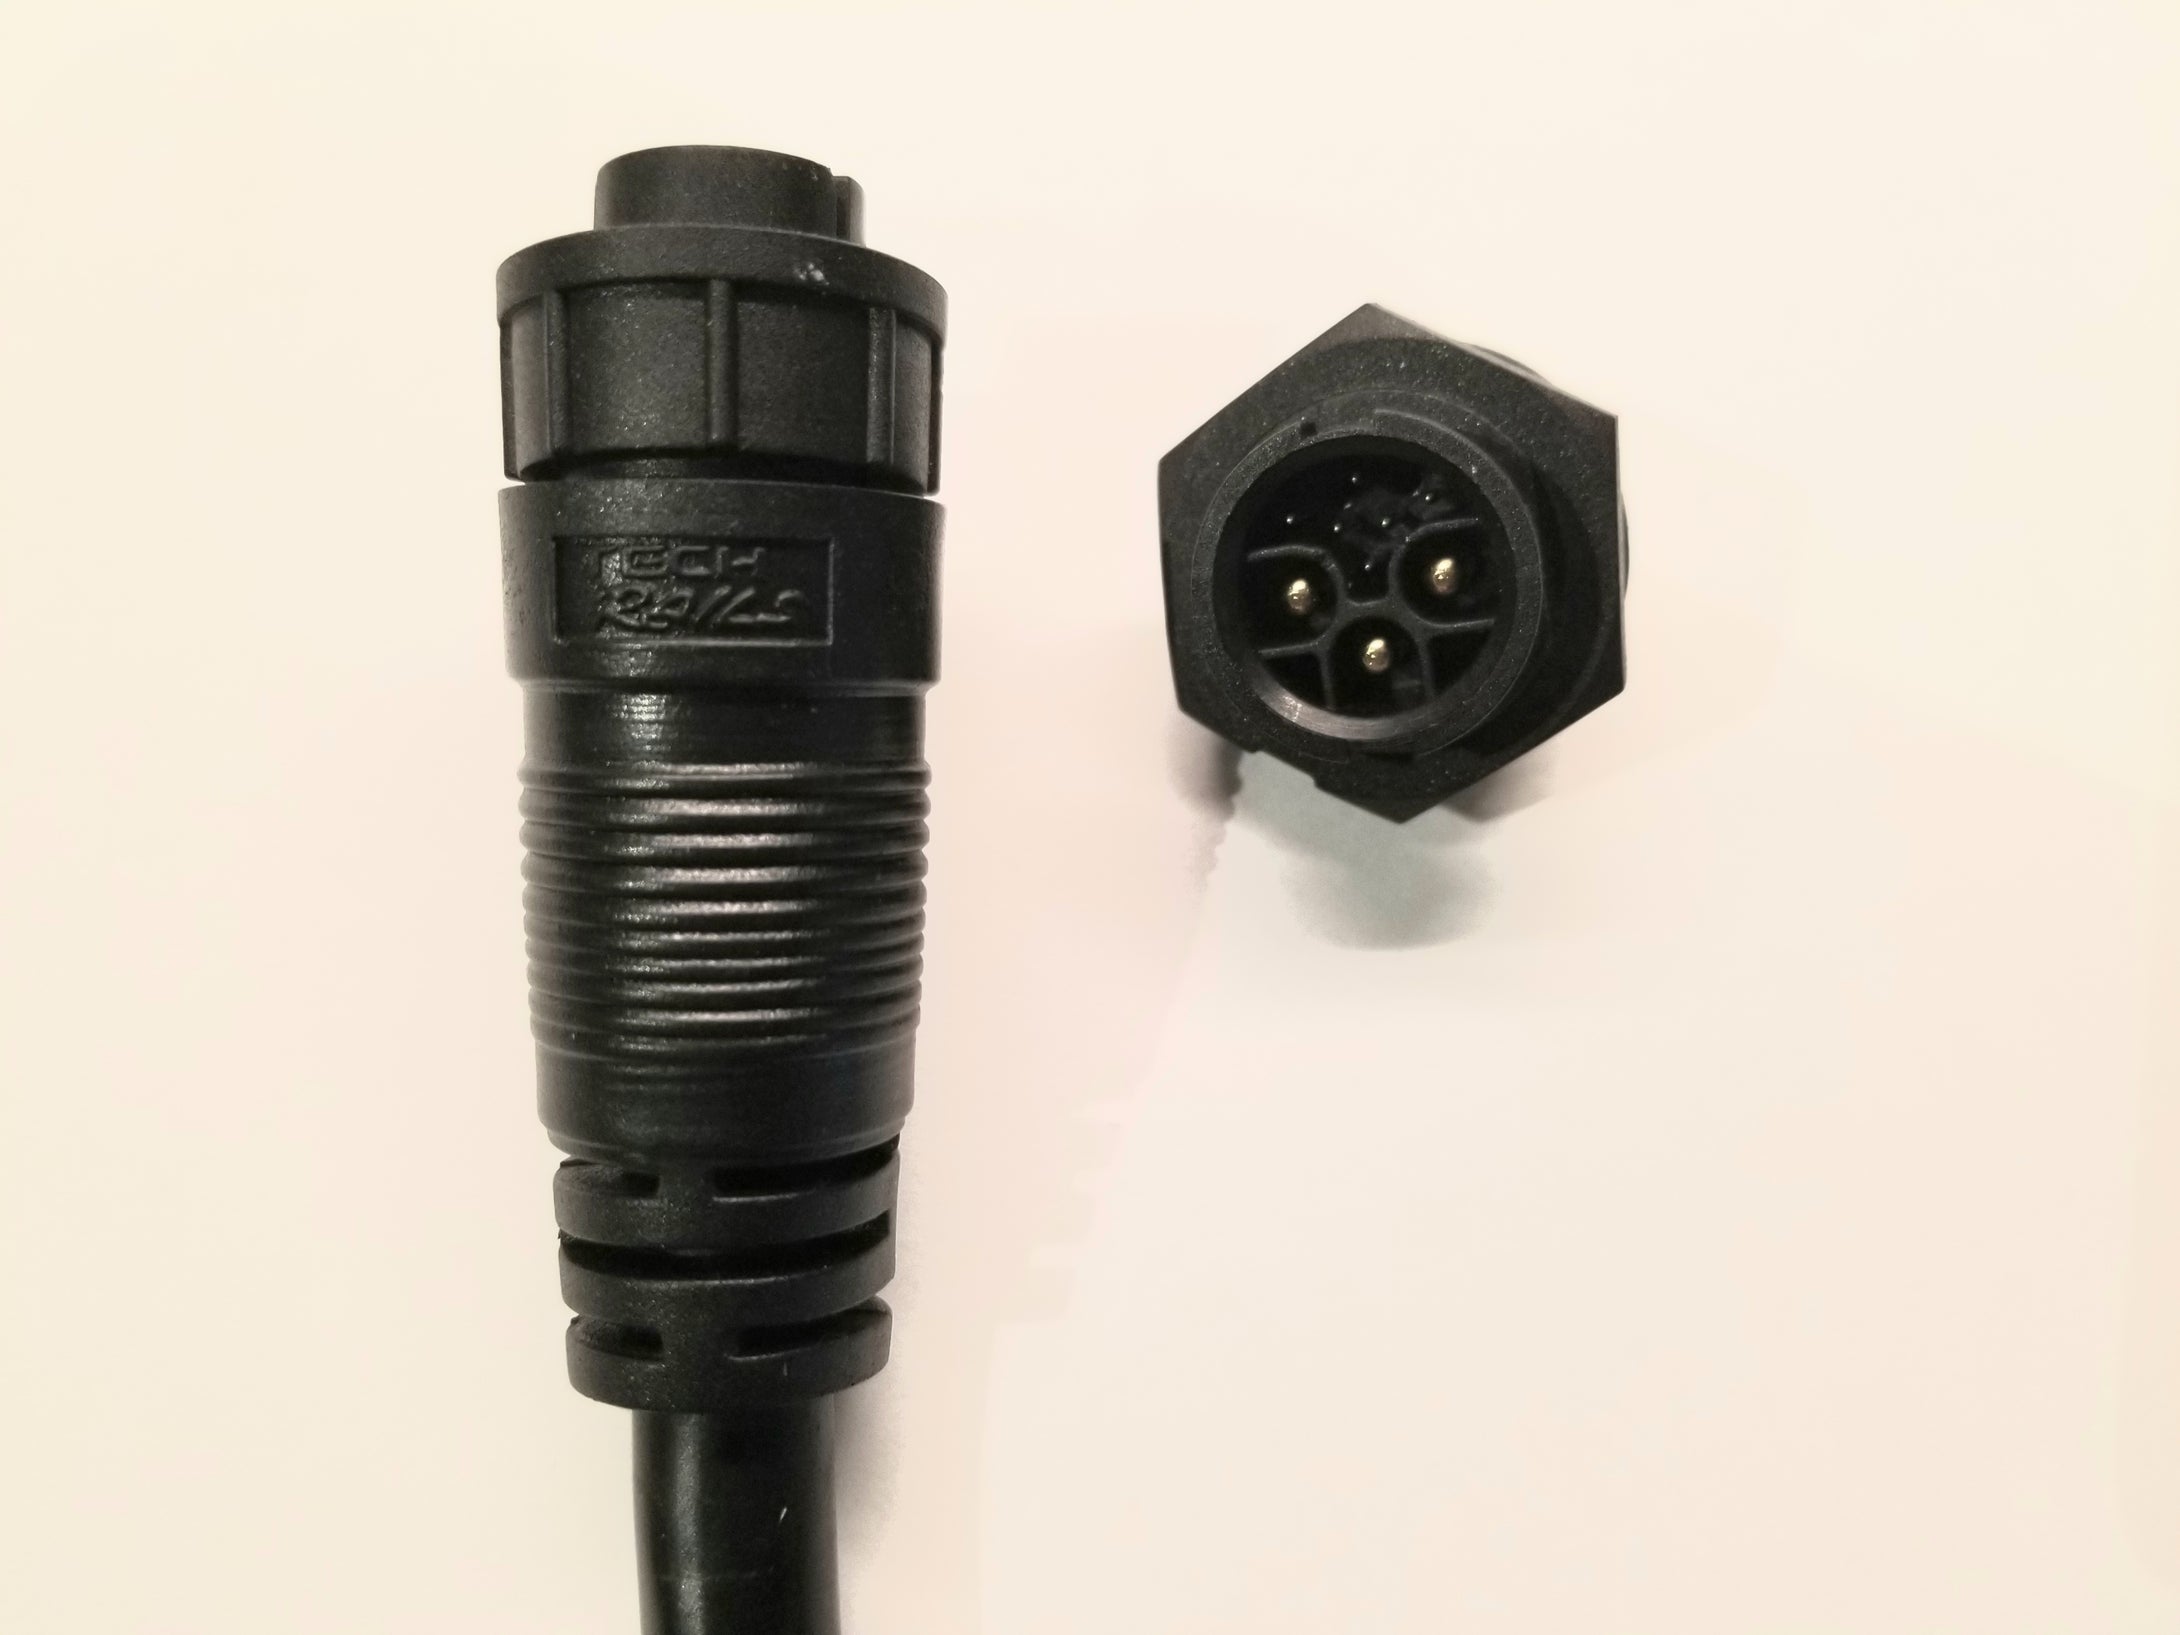 GT/GTS motor/controller replacement plug set